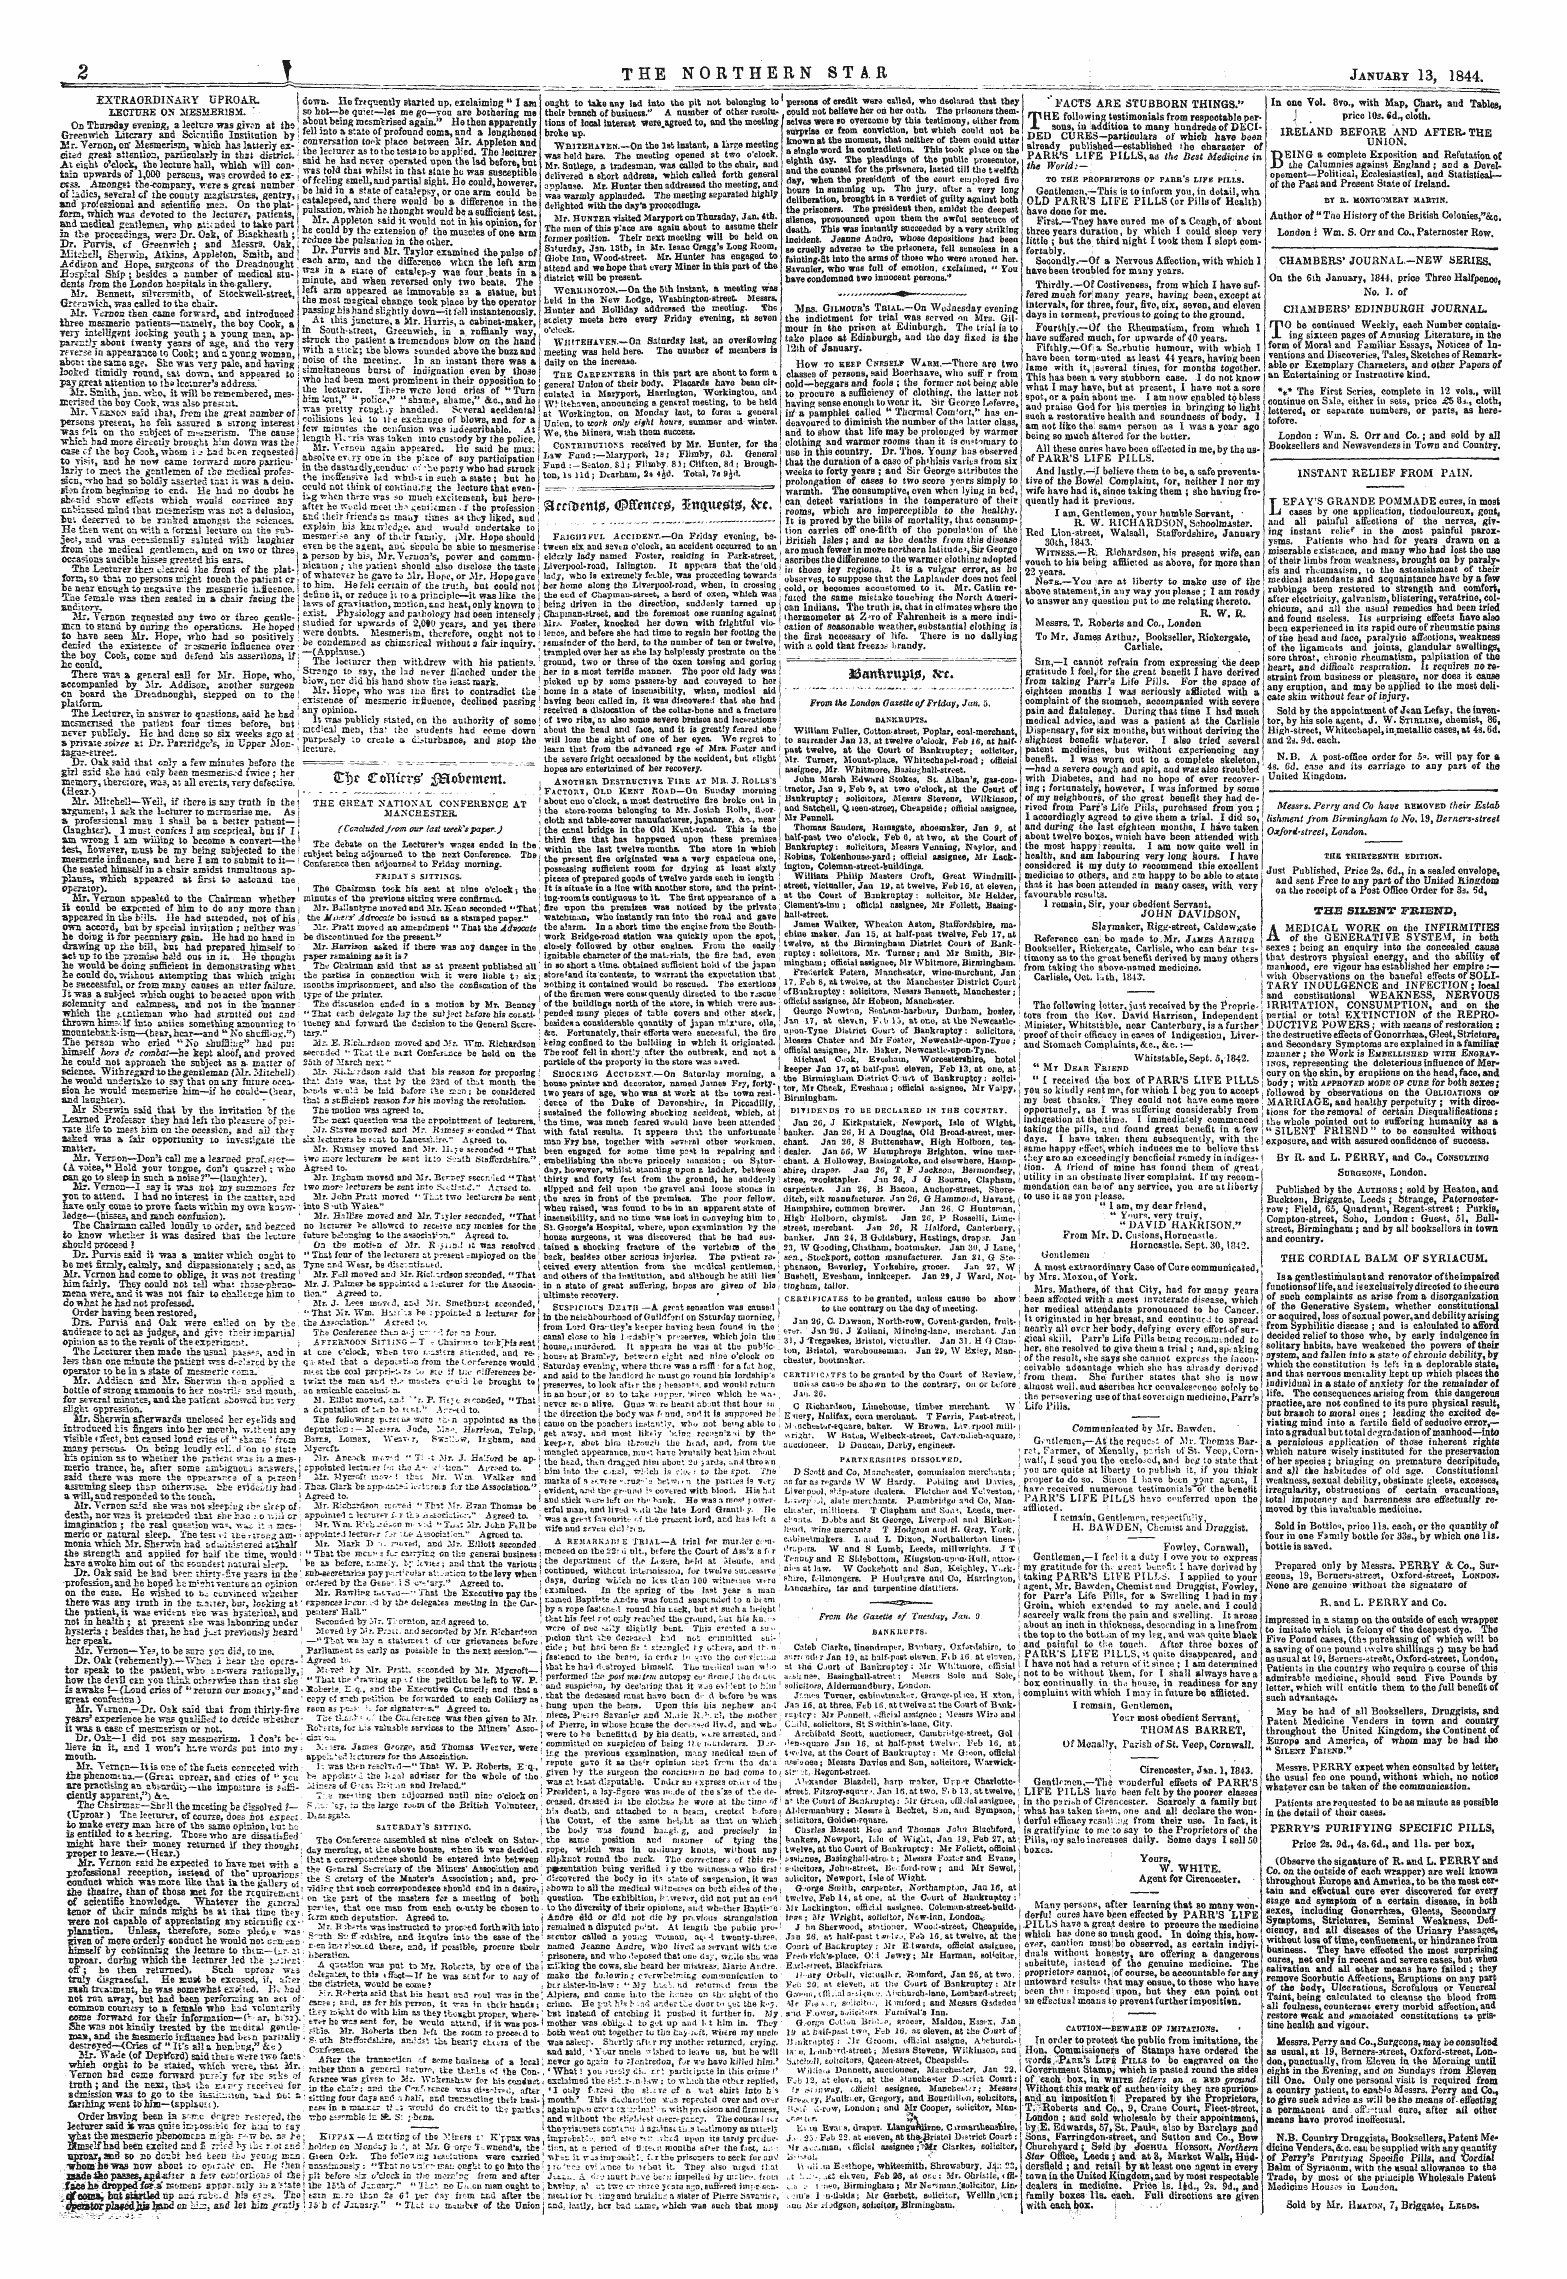 Northern Star (1837-1852): jS F Y, 1st edition - 8kntj*Ttt& &Lt;$Ffietttt0, $U&Lt;}W!5t0 &Gt; &C